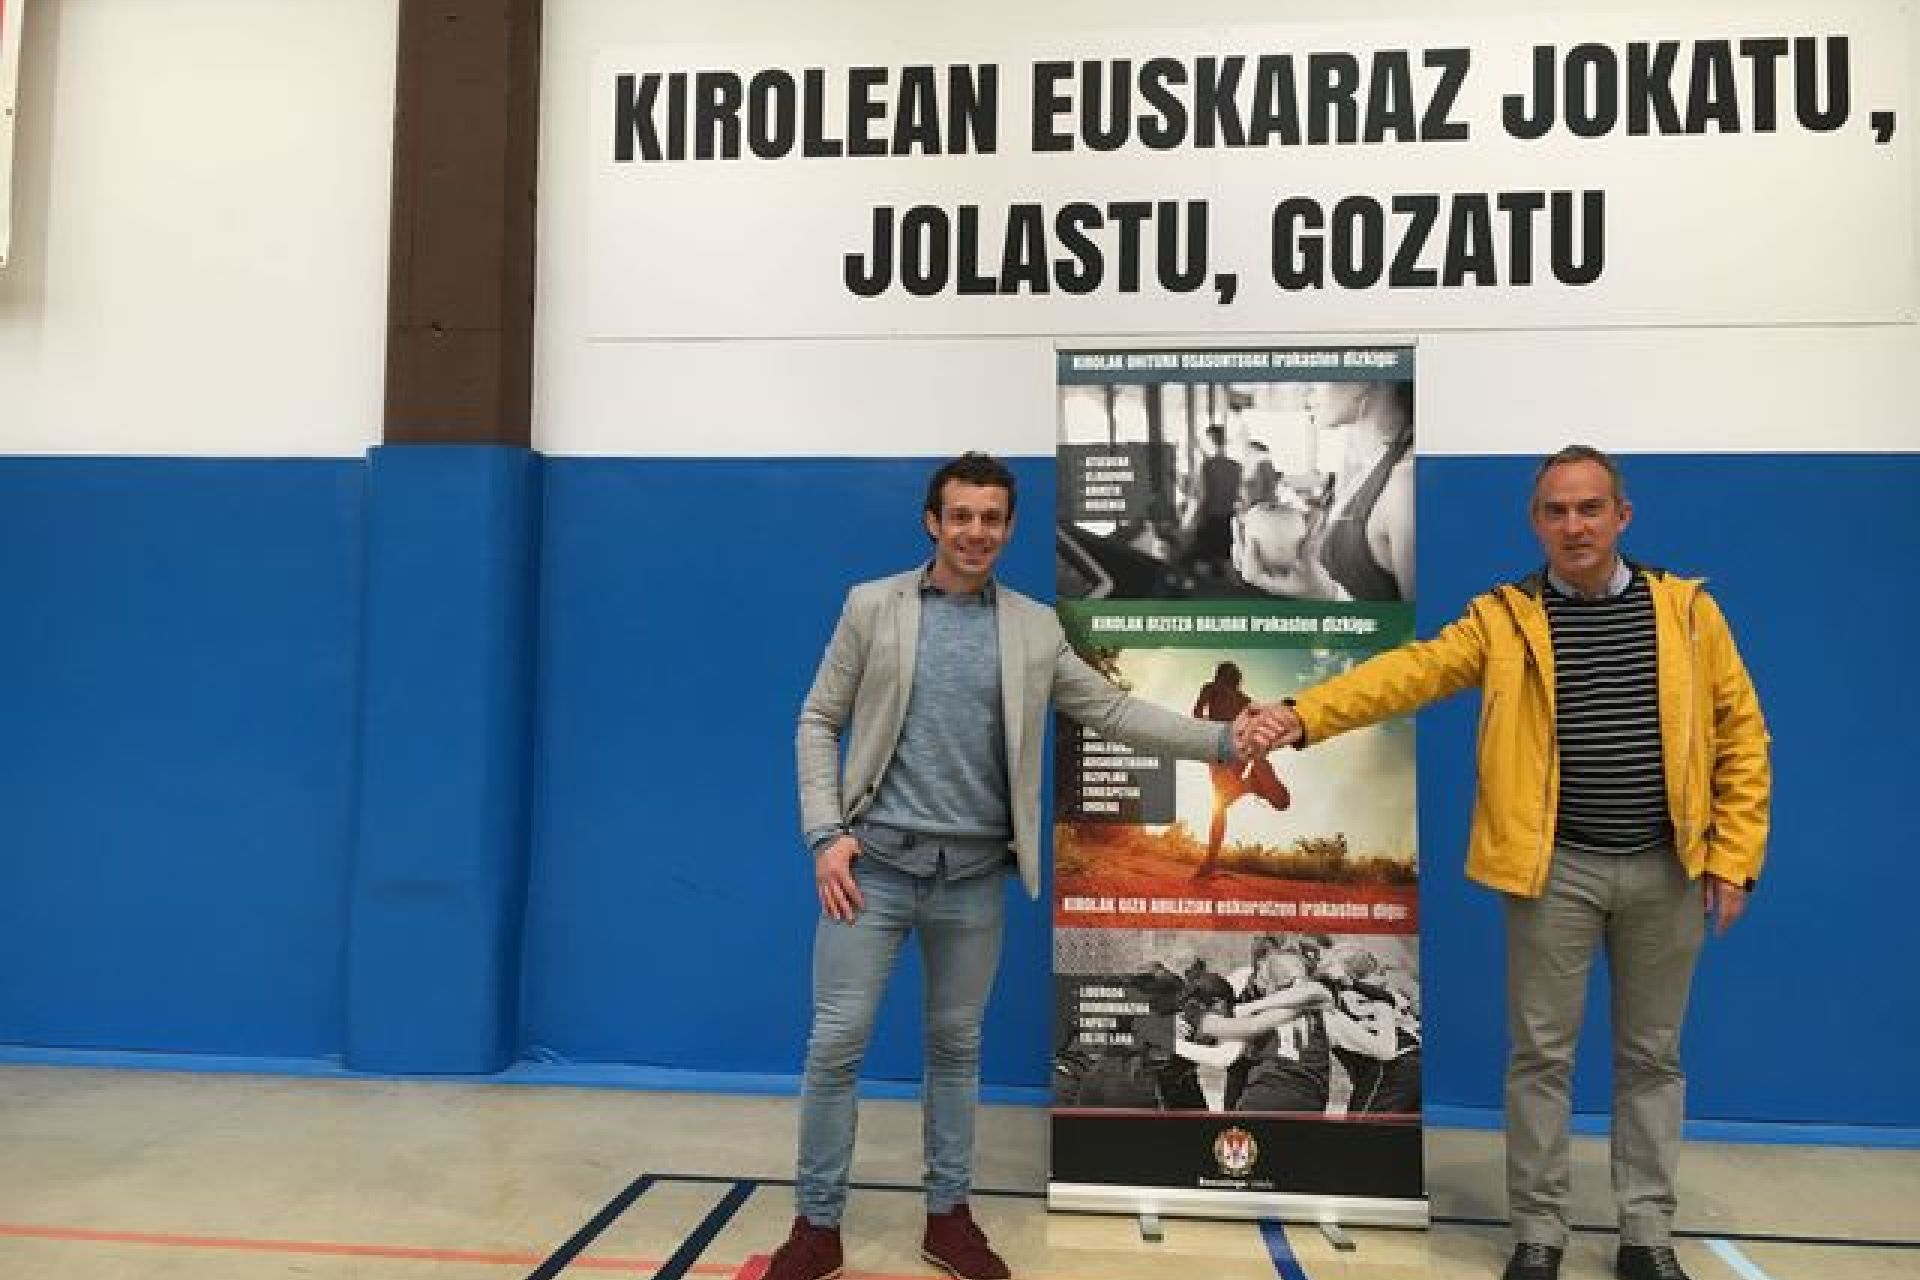 Lemas deportivos en euskera en las instalaciones deportivas para promover su uso